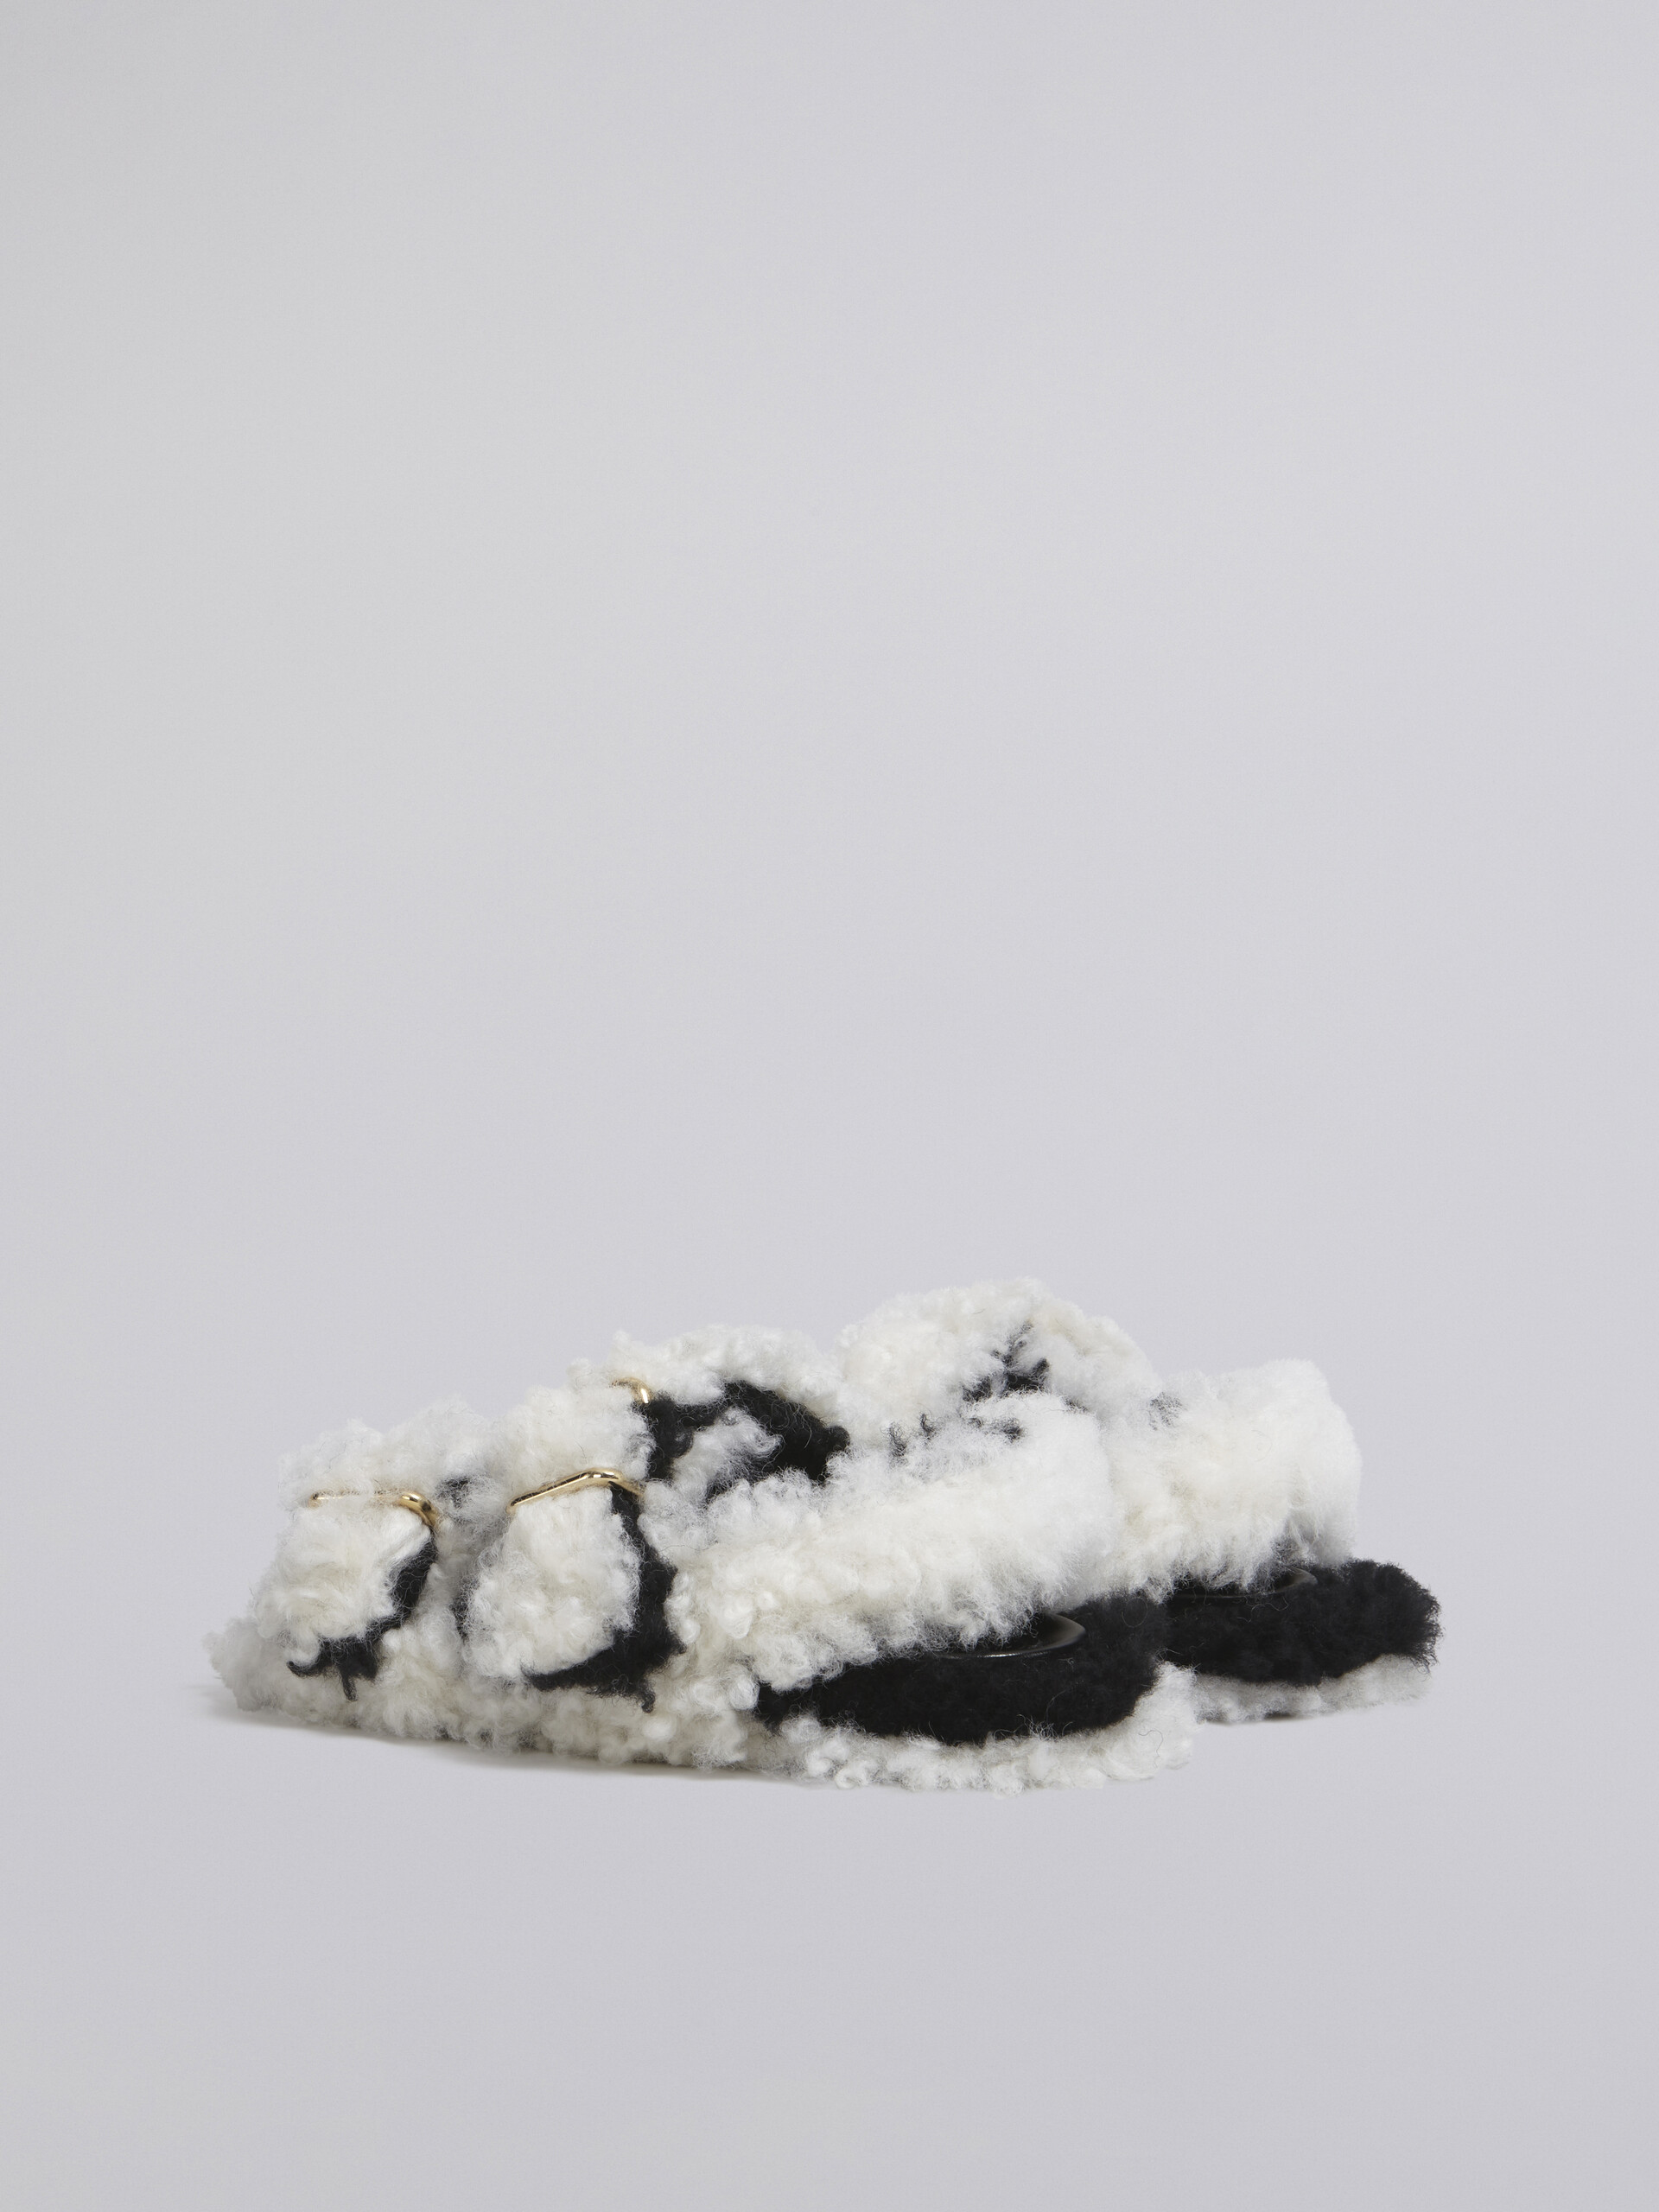 Sandalia Fussbett de borreguito blanco con doble hebilla - Sandalias - Image 3